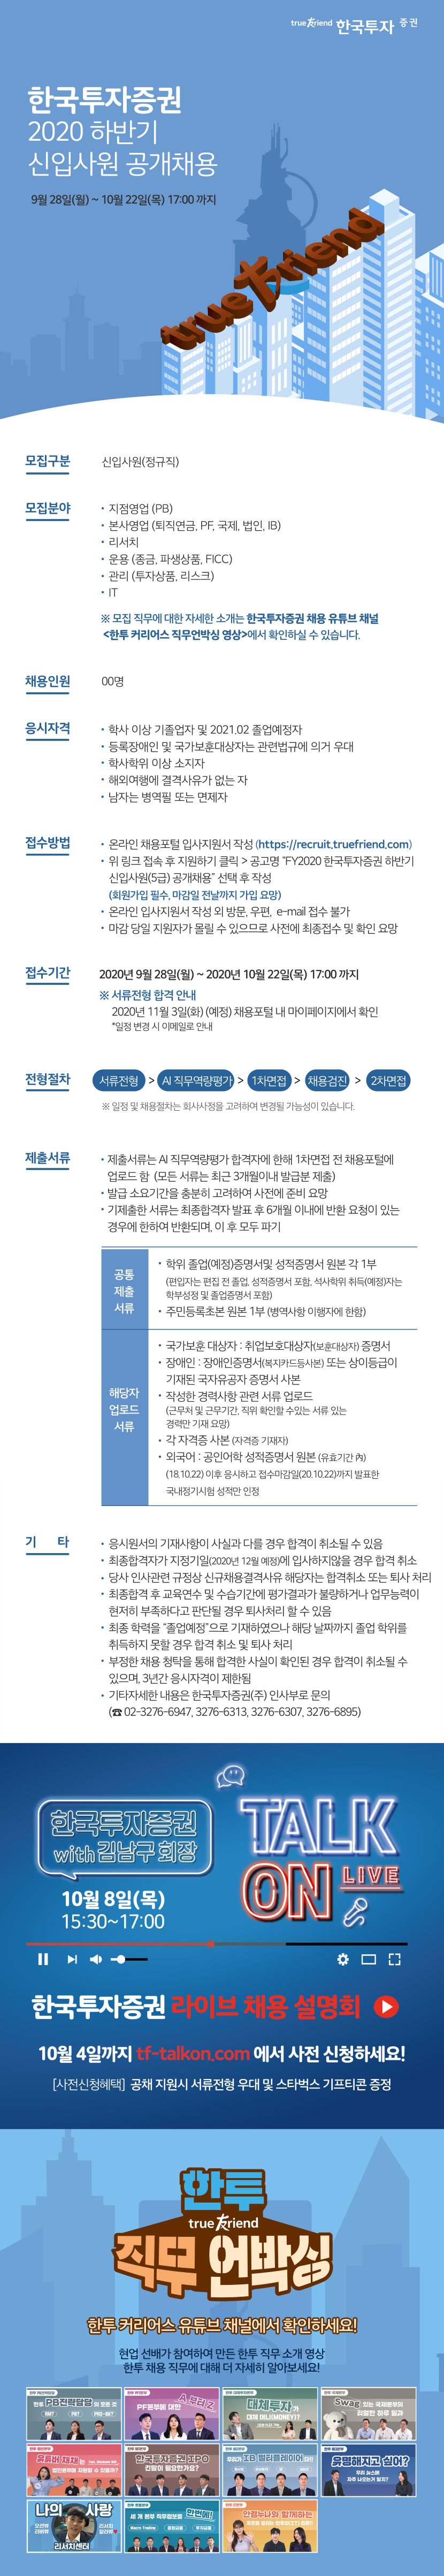 한국 투자 증권 채용